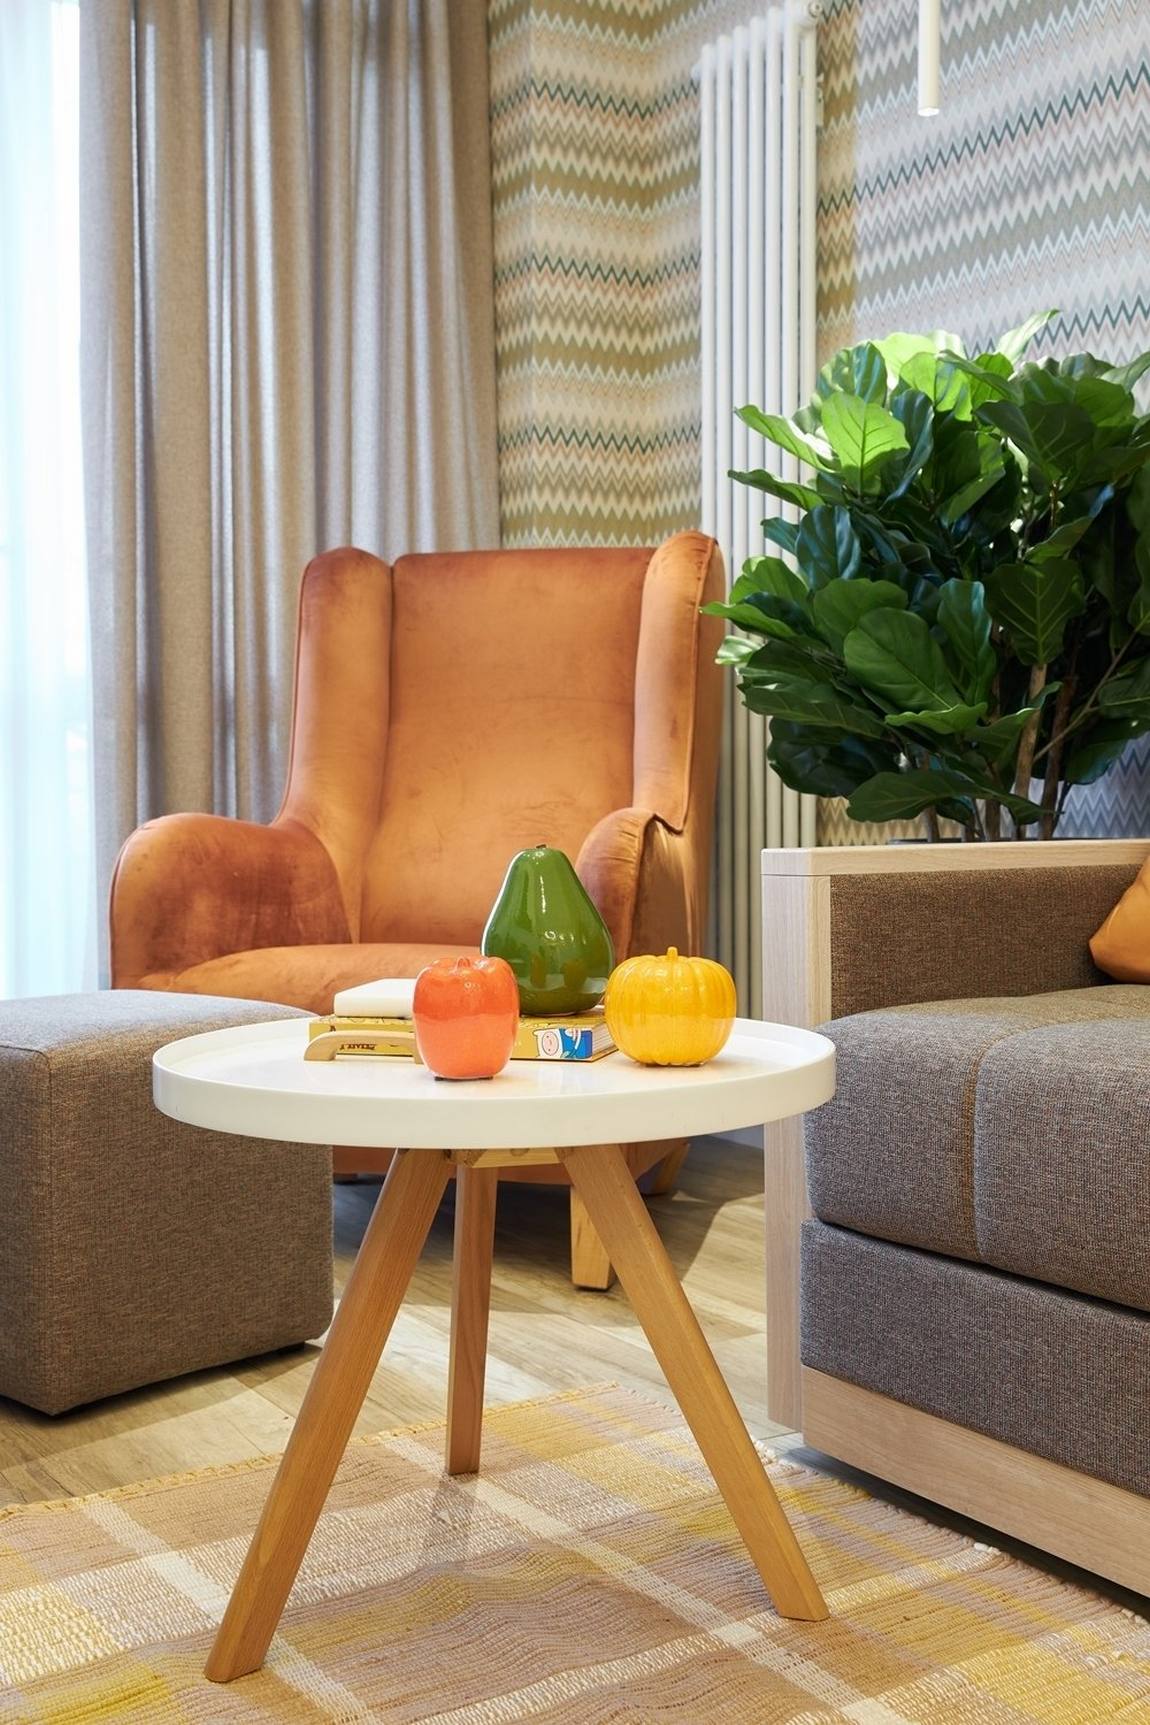 Bàn nước thiết kế đơn giản với mặt bàn tròn màu trắng, chân ghế gỗ đặt trên tấm thảm sáng màu. Chiếc ghế bành màu cam gạch đặt ở góc cửa sổ tạo nên góc thư giãn nhẹ nhàng. Chậu cây cảnh tươi xanh cũng giúp cho căn phòng thêm sinh động.